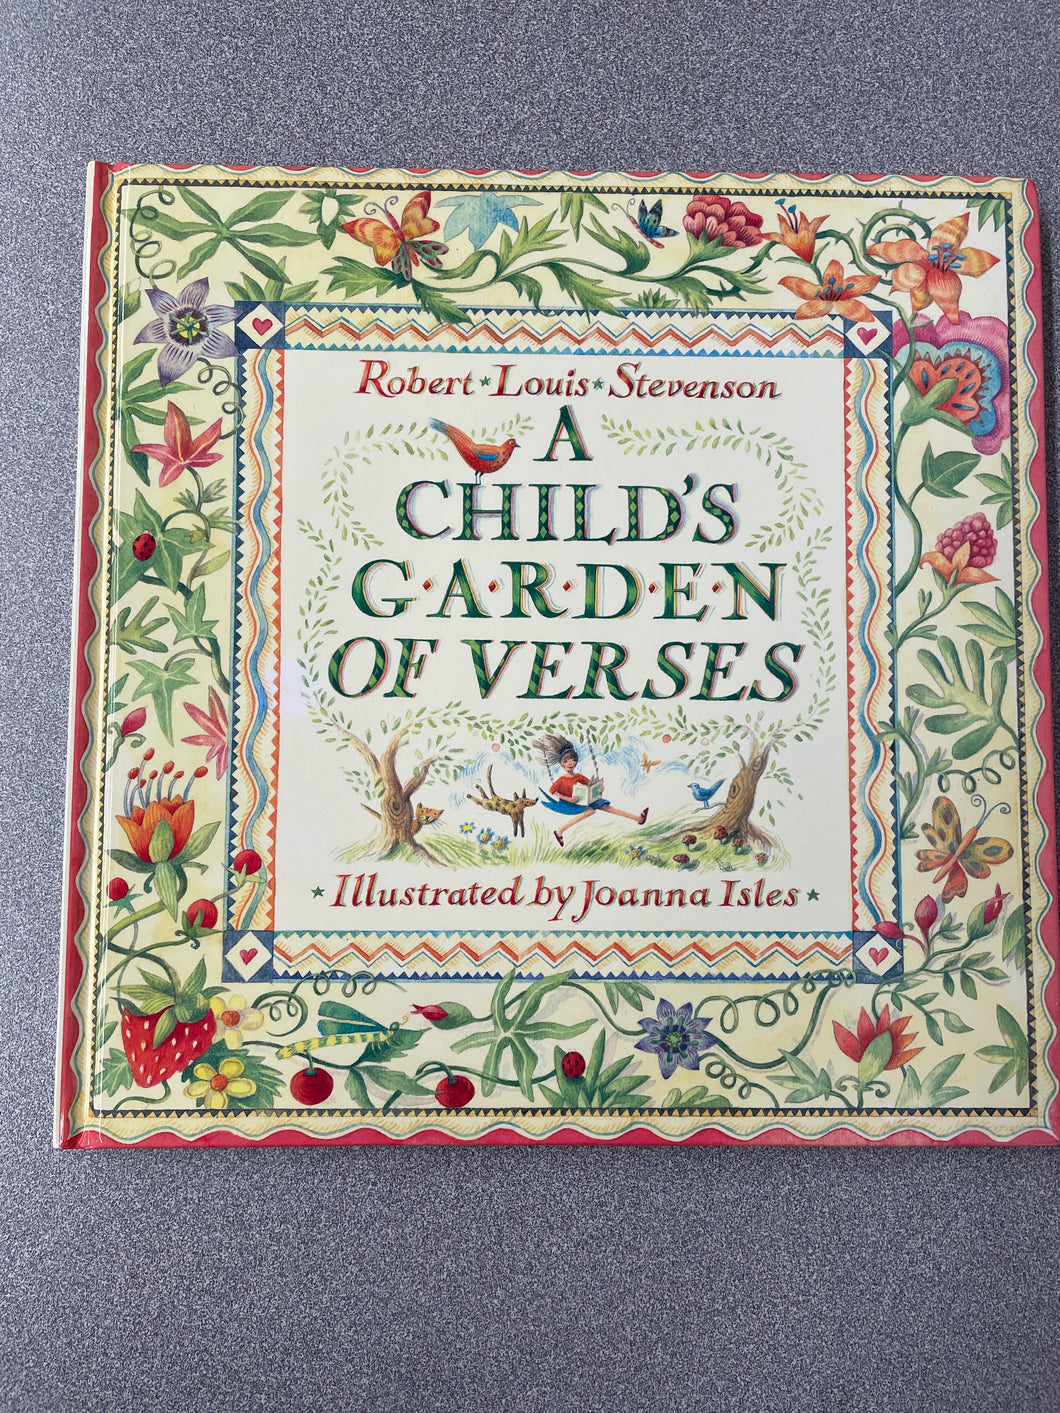 A Child's Garden of Verses, Stevenson, Robert Louis [1994] CN 12/23